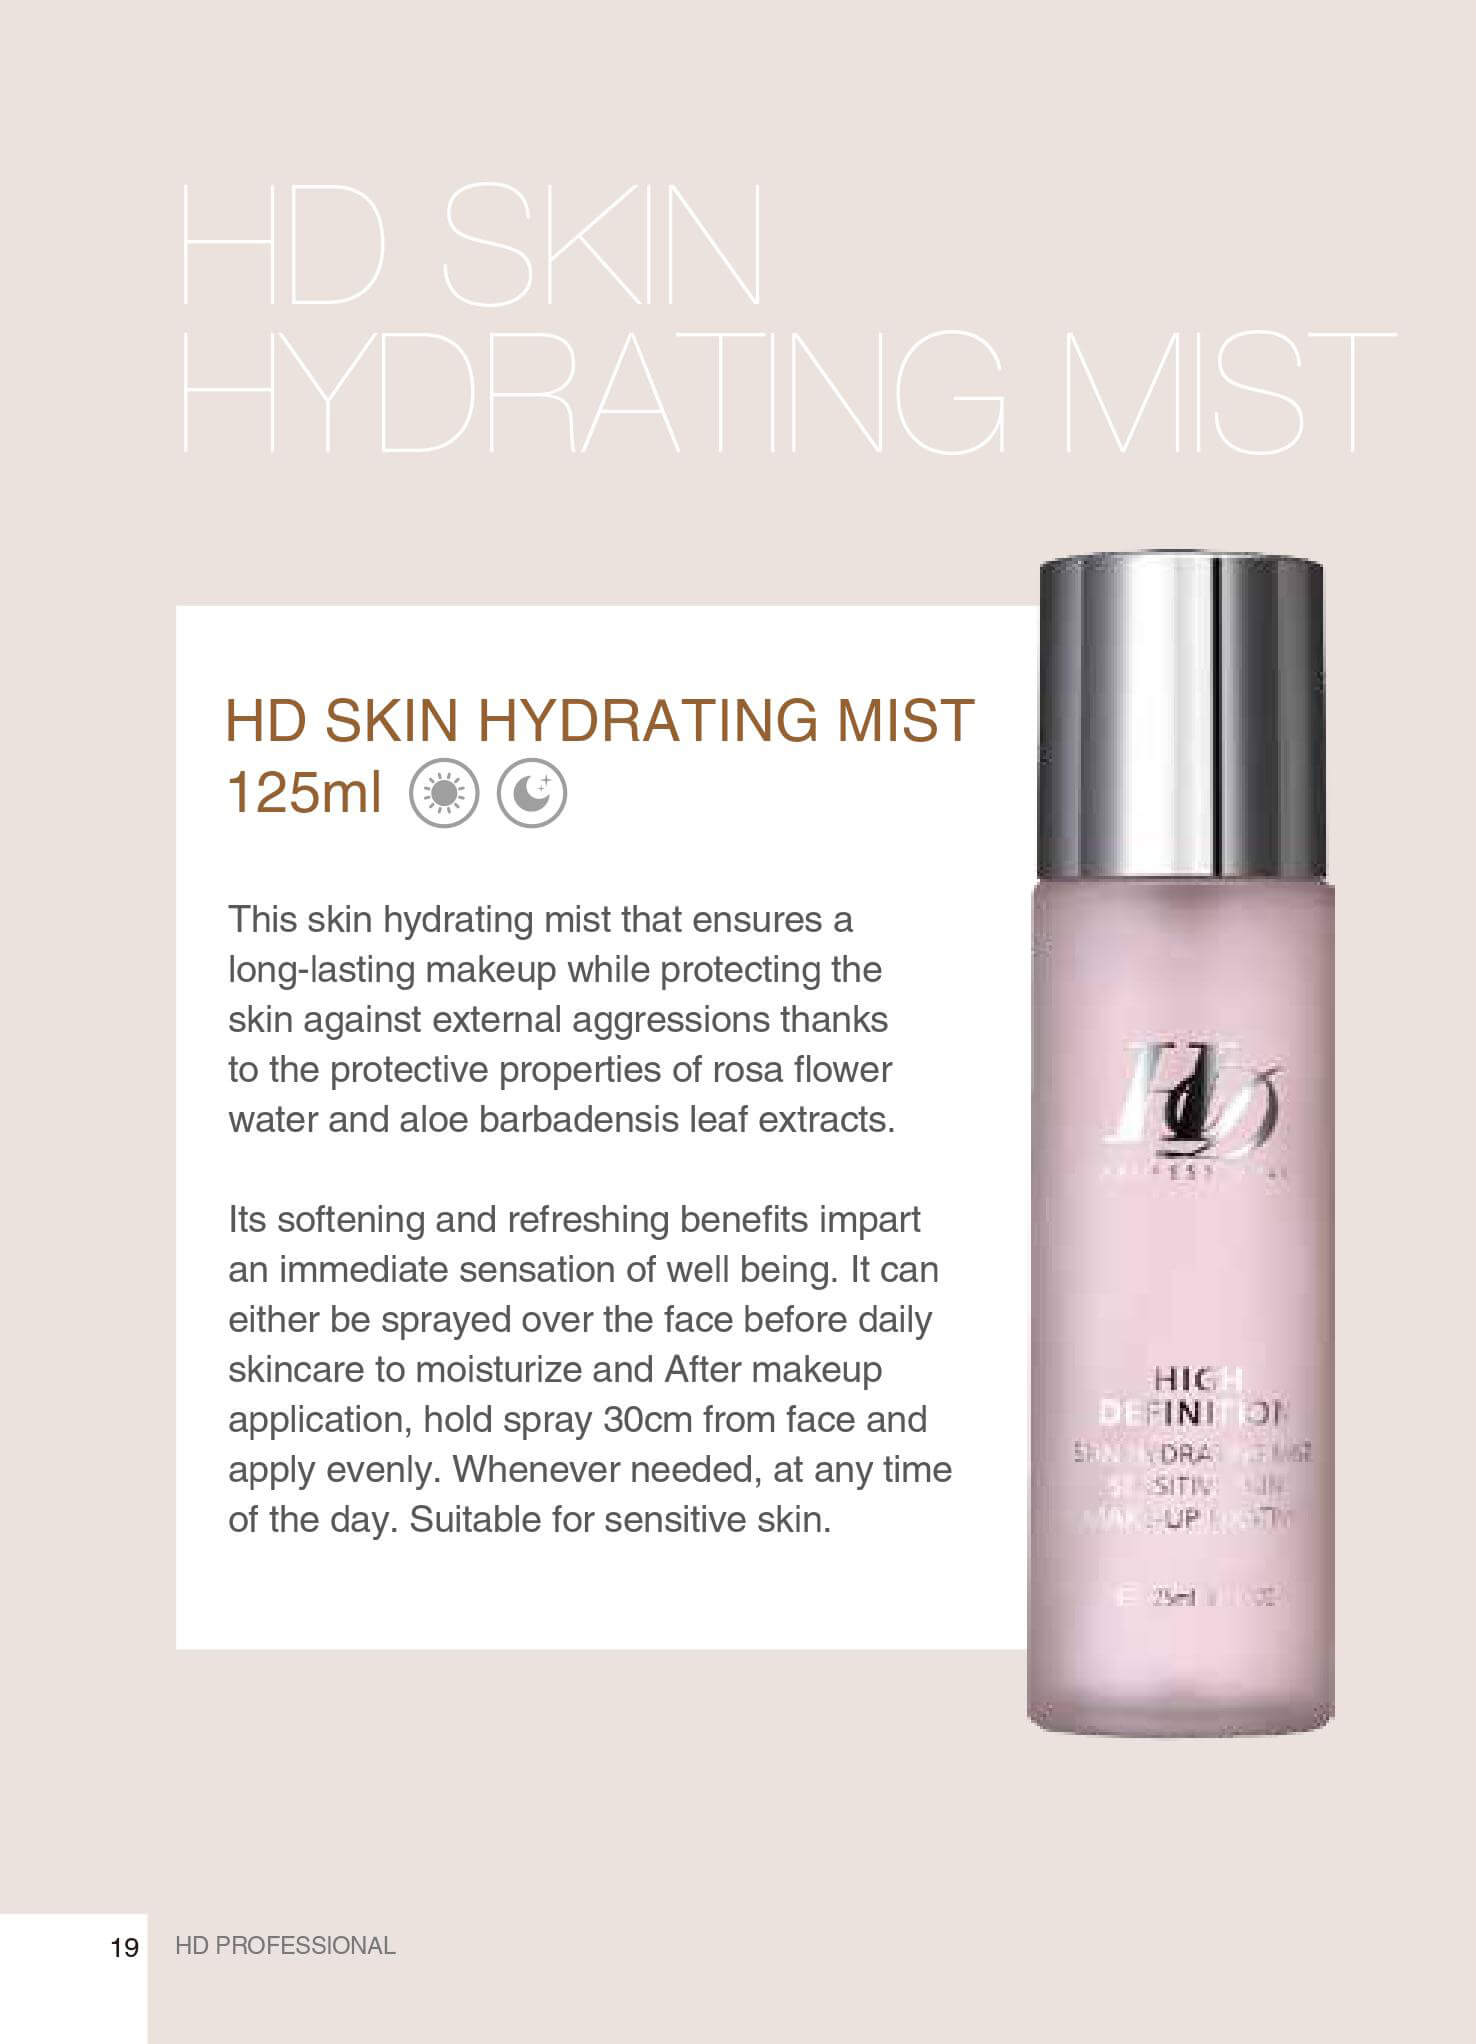 HD Skin Hydrating Mist - KatTong